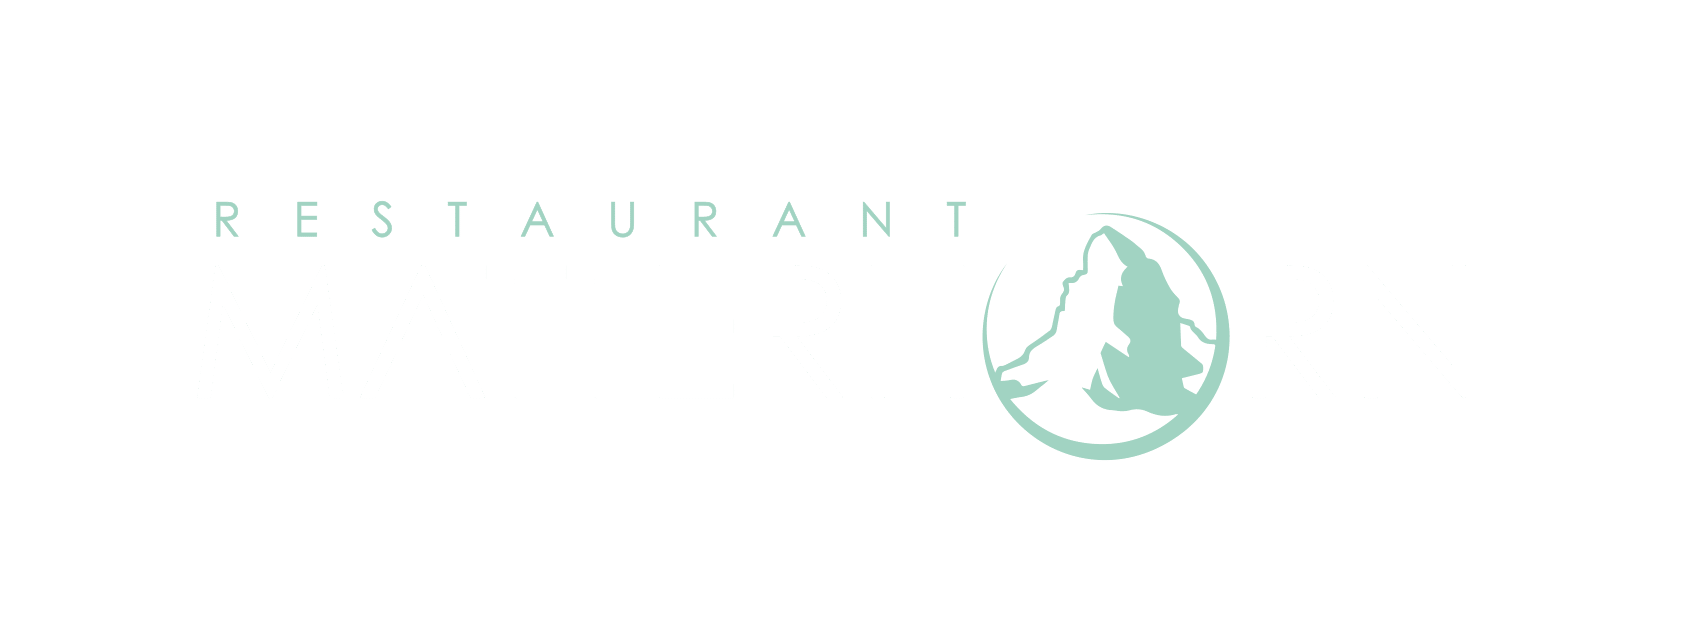 Restaurant Matterhorn - Riederalp